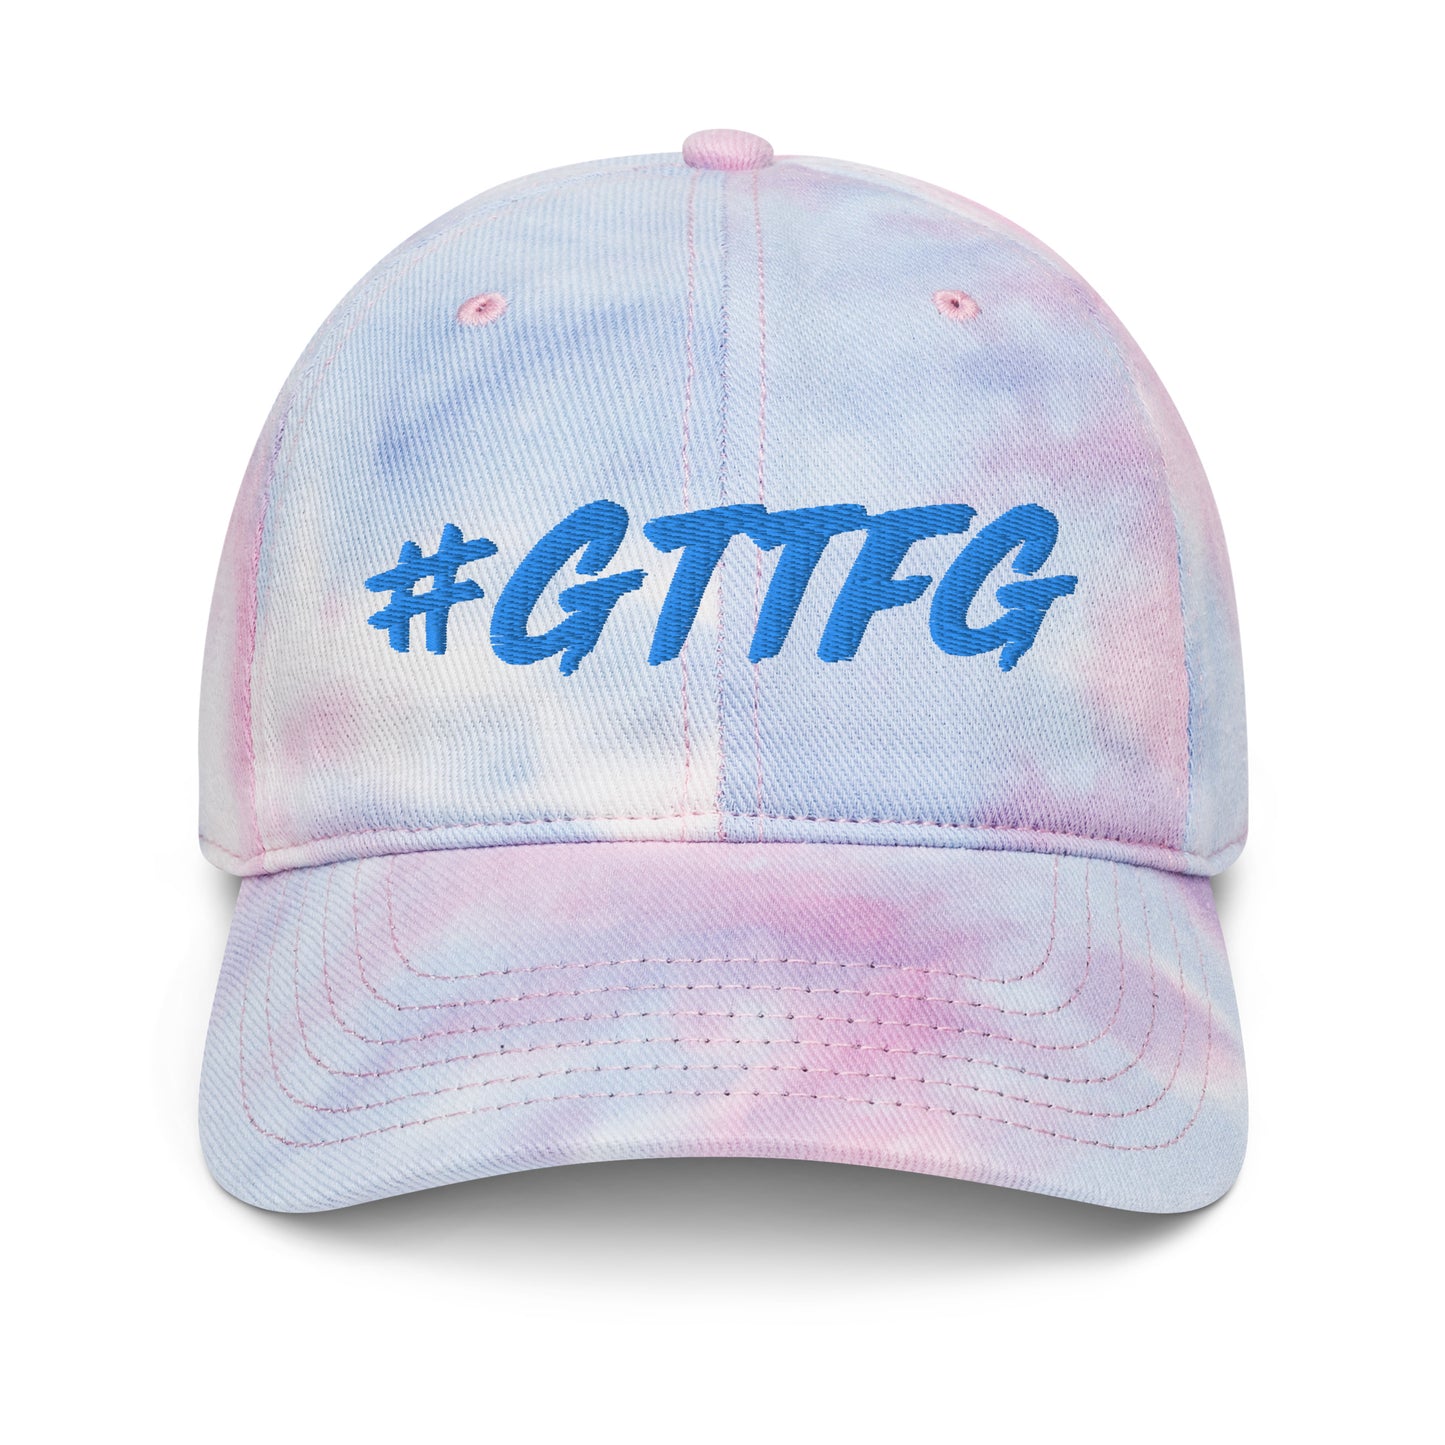 #GTTFG Tie Dye Hat